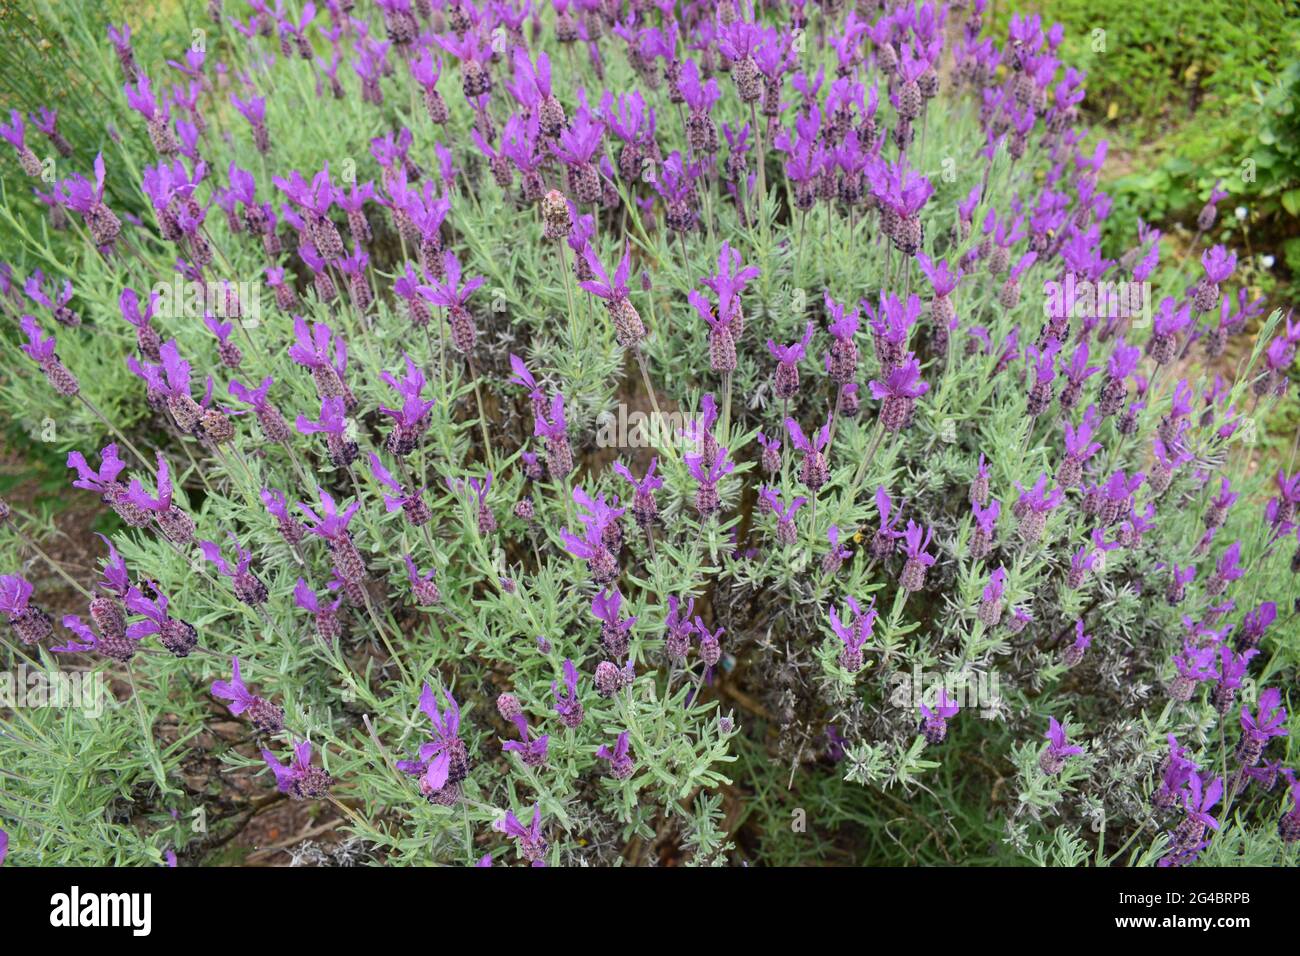 Large lavender bush Stock Photo